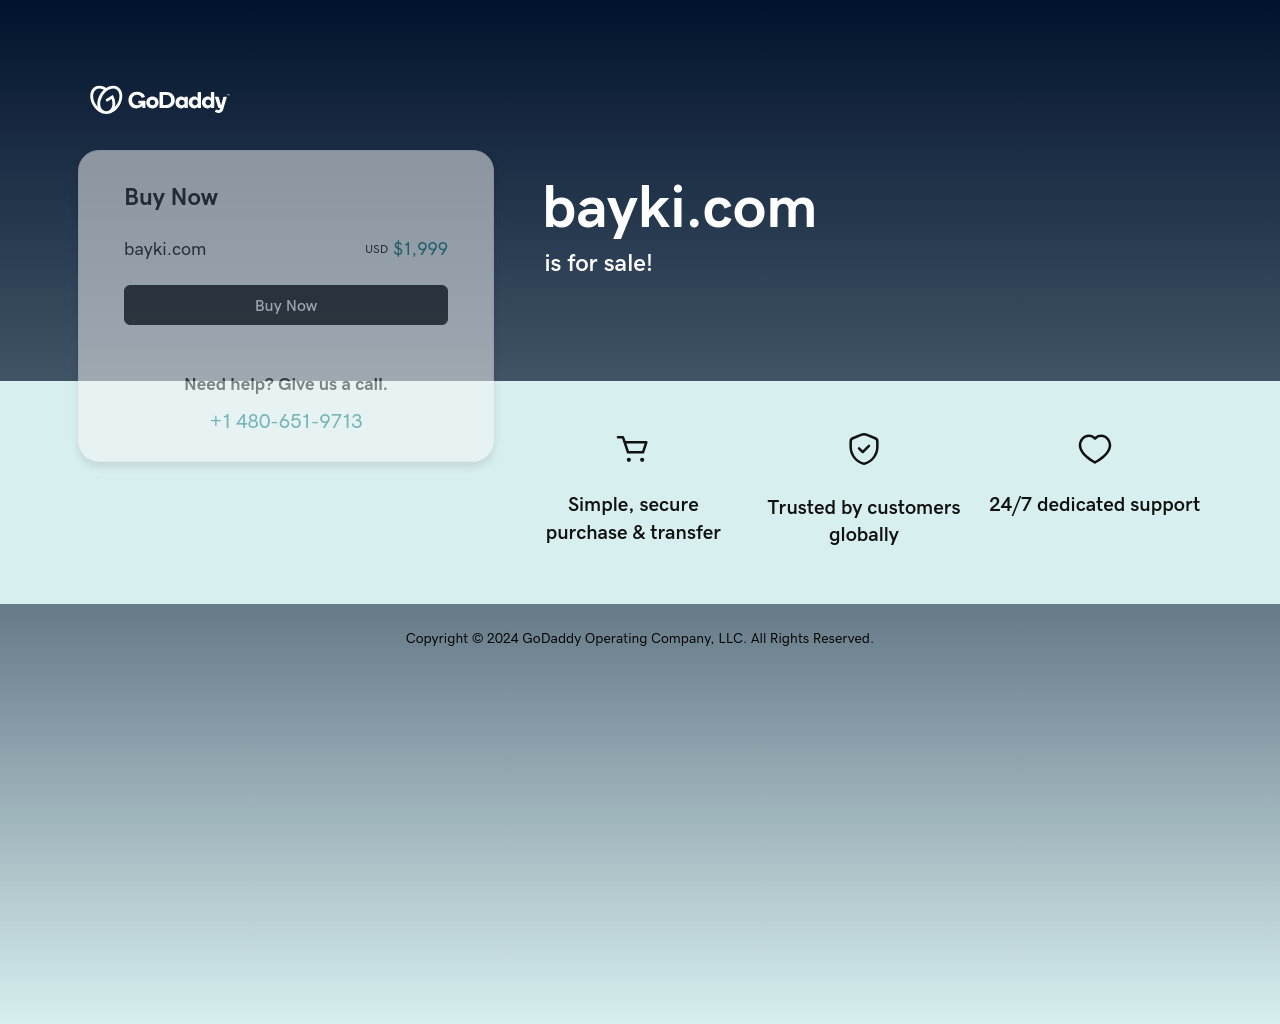 bayki.com